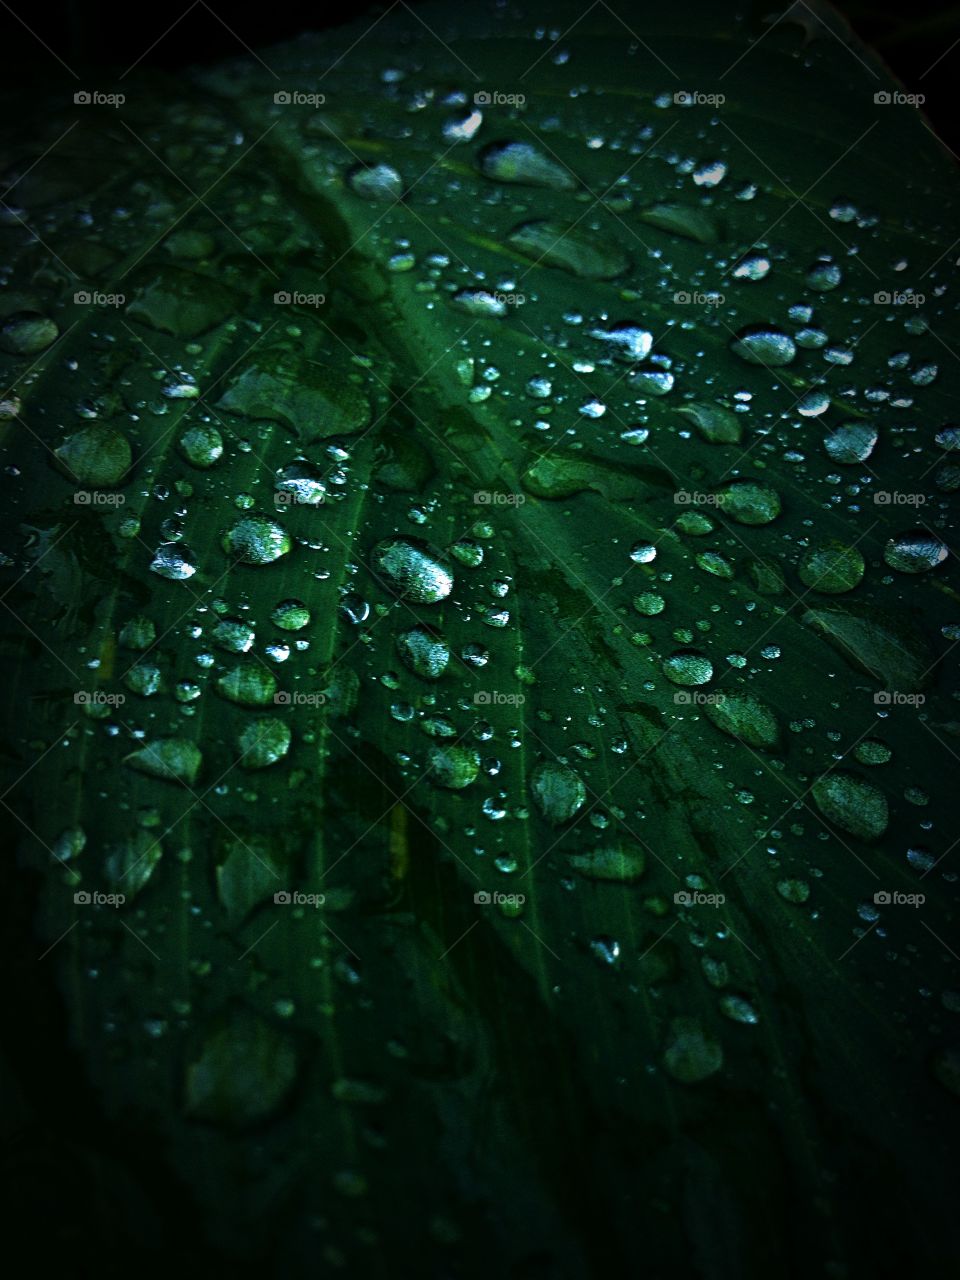 Green drops